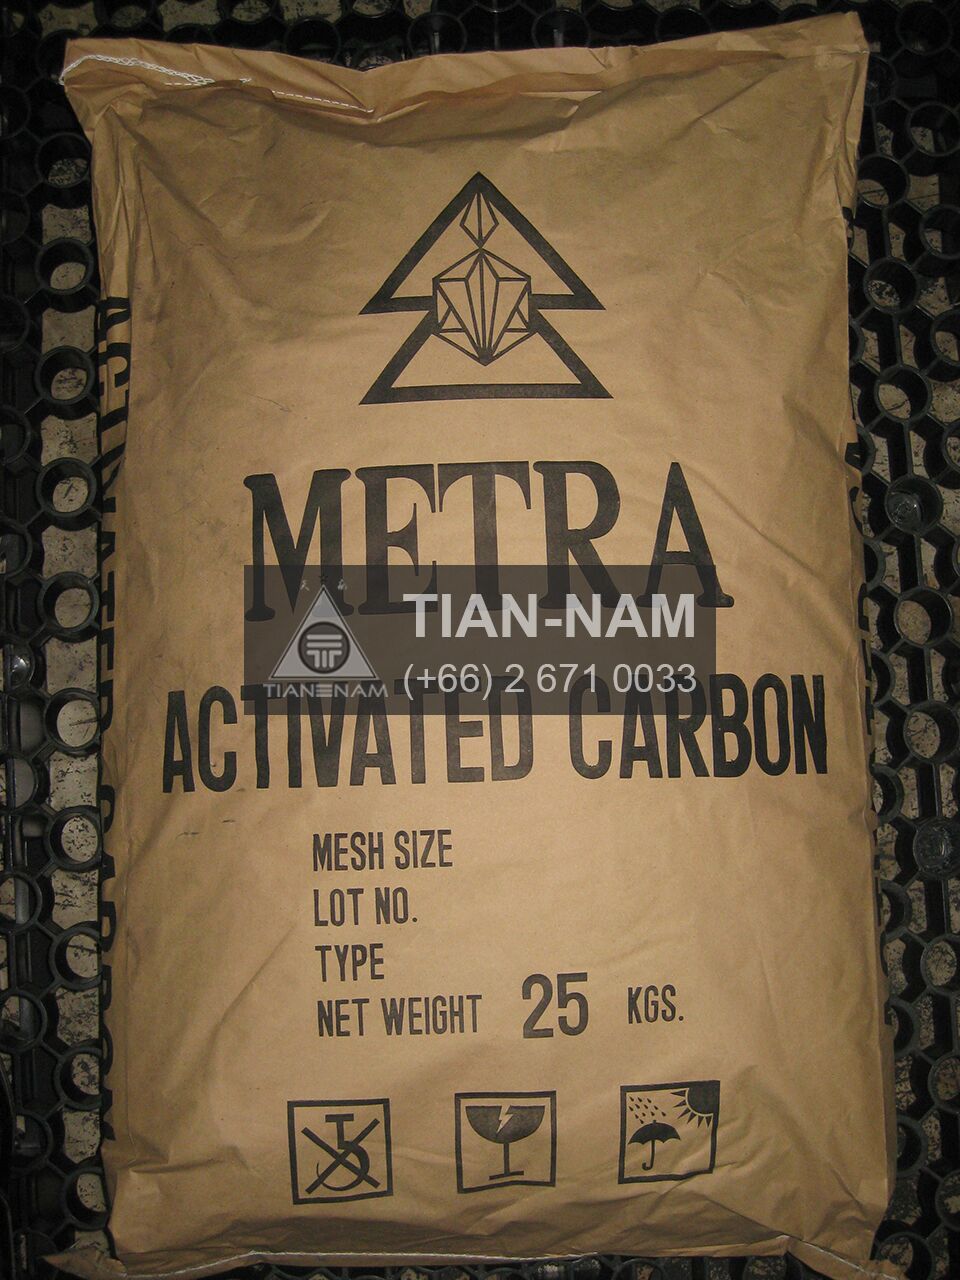 Activated Carbon Thailand แอ๊คติเวท คาร์บอน ผง/เม็ด ไทย